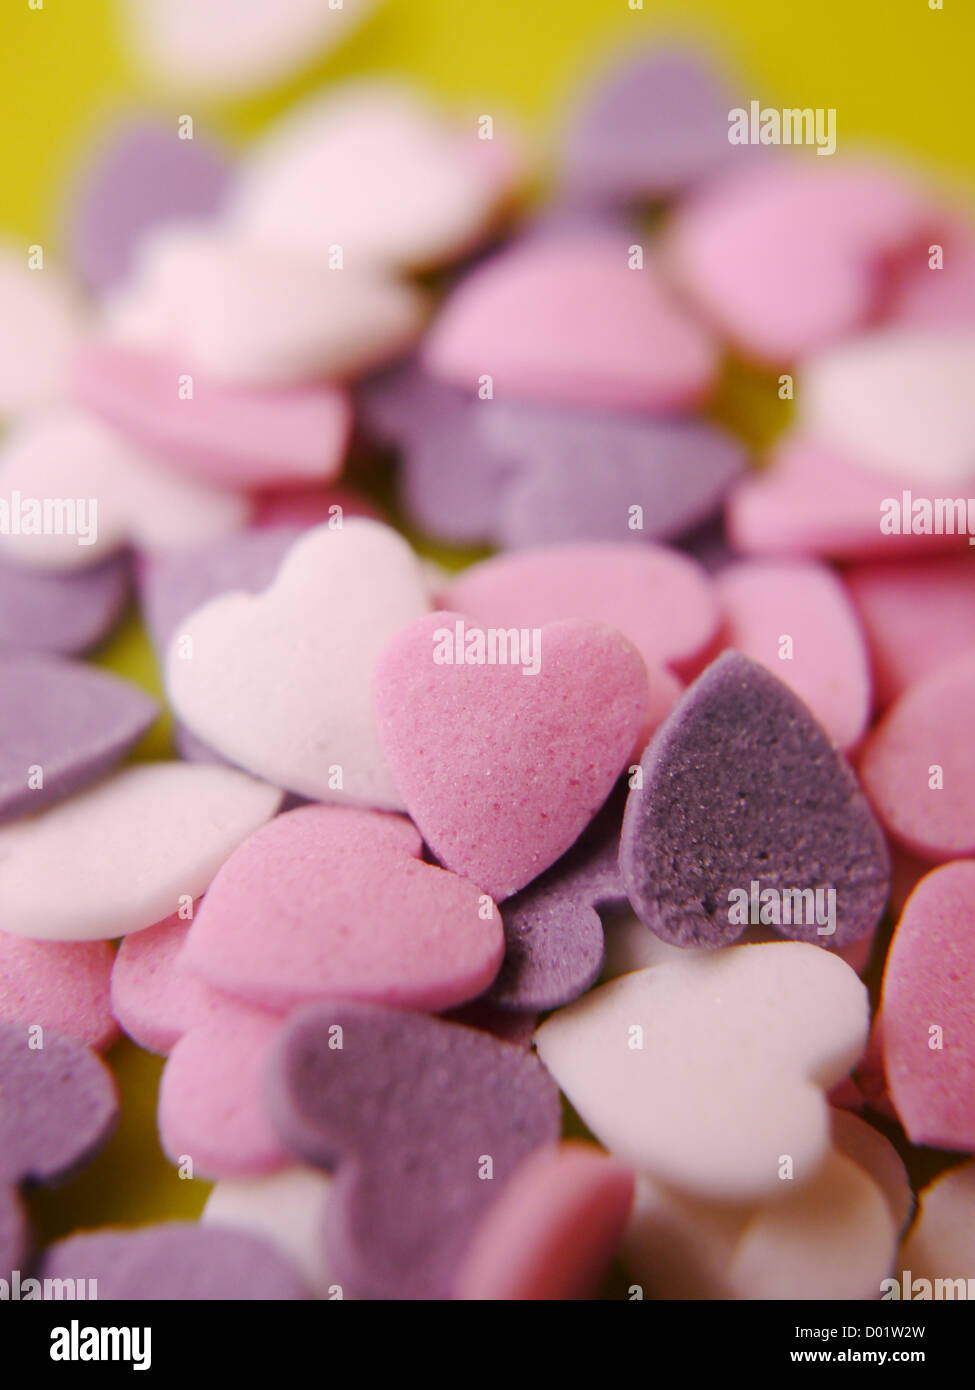 En blanco Candy corazón - Corazón - conversación agregar su propio texto - Pink Heart está en foco Foto de stock